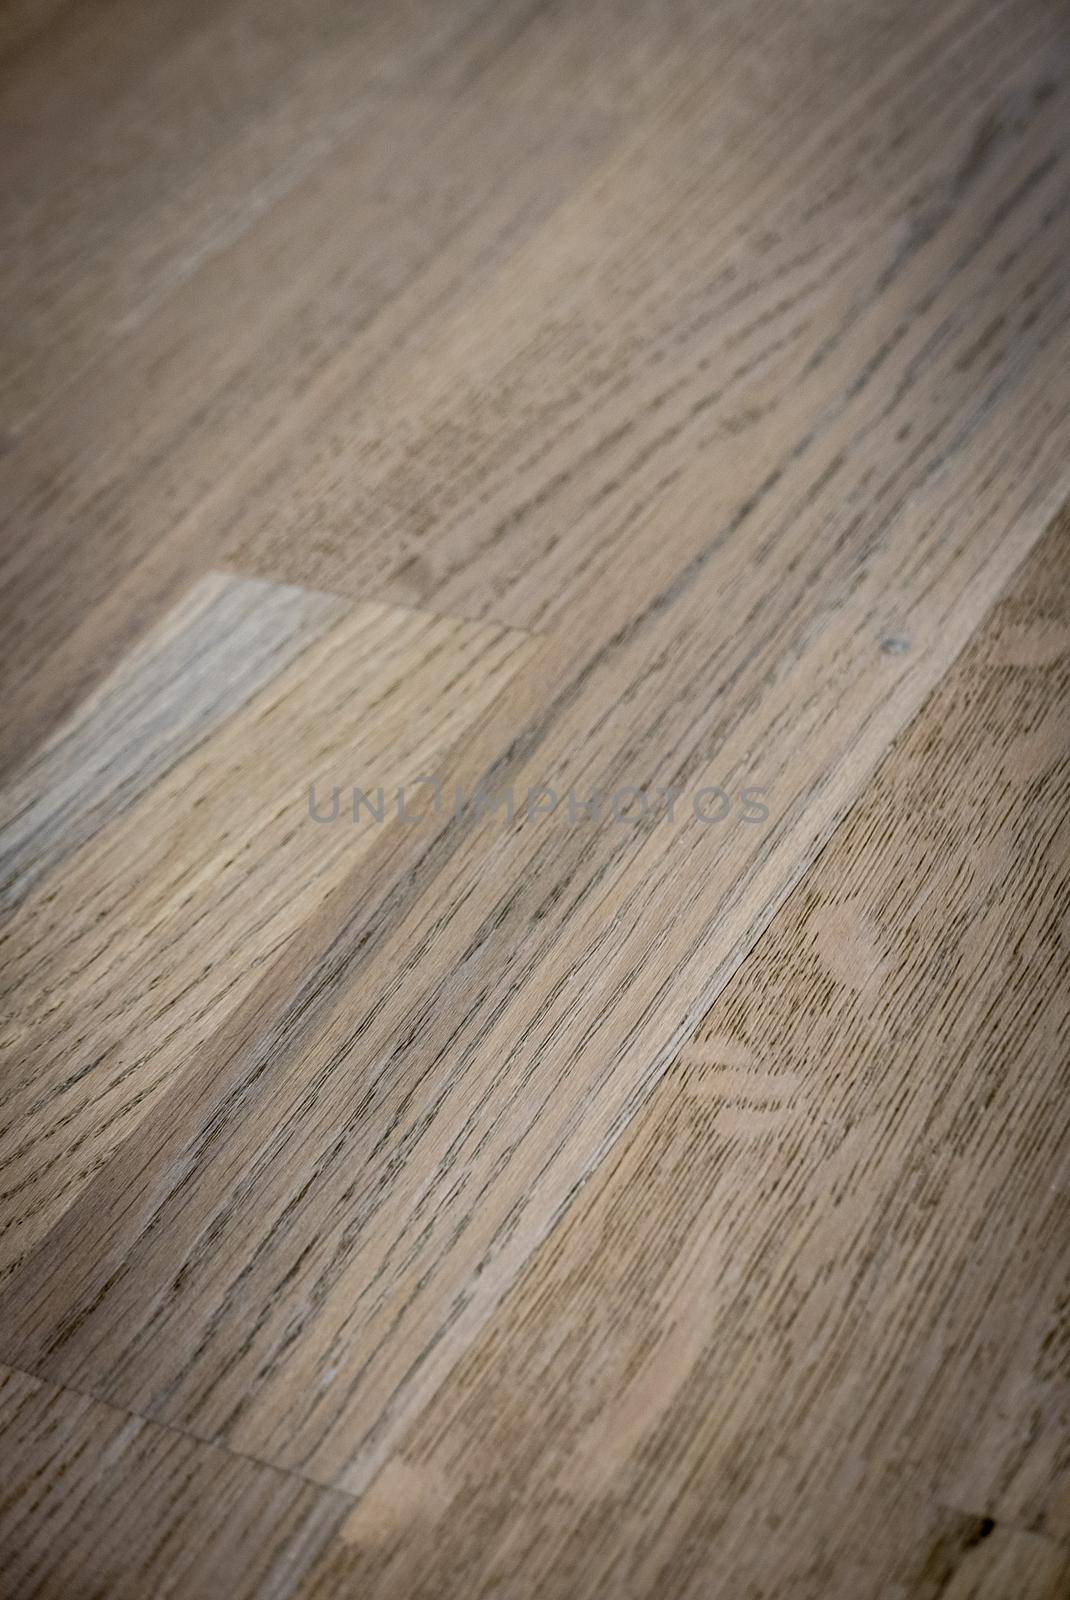 Dark brown wooden parquet floor texture background by sharafizdushanbe